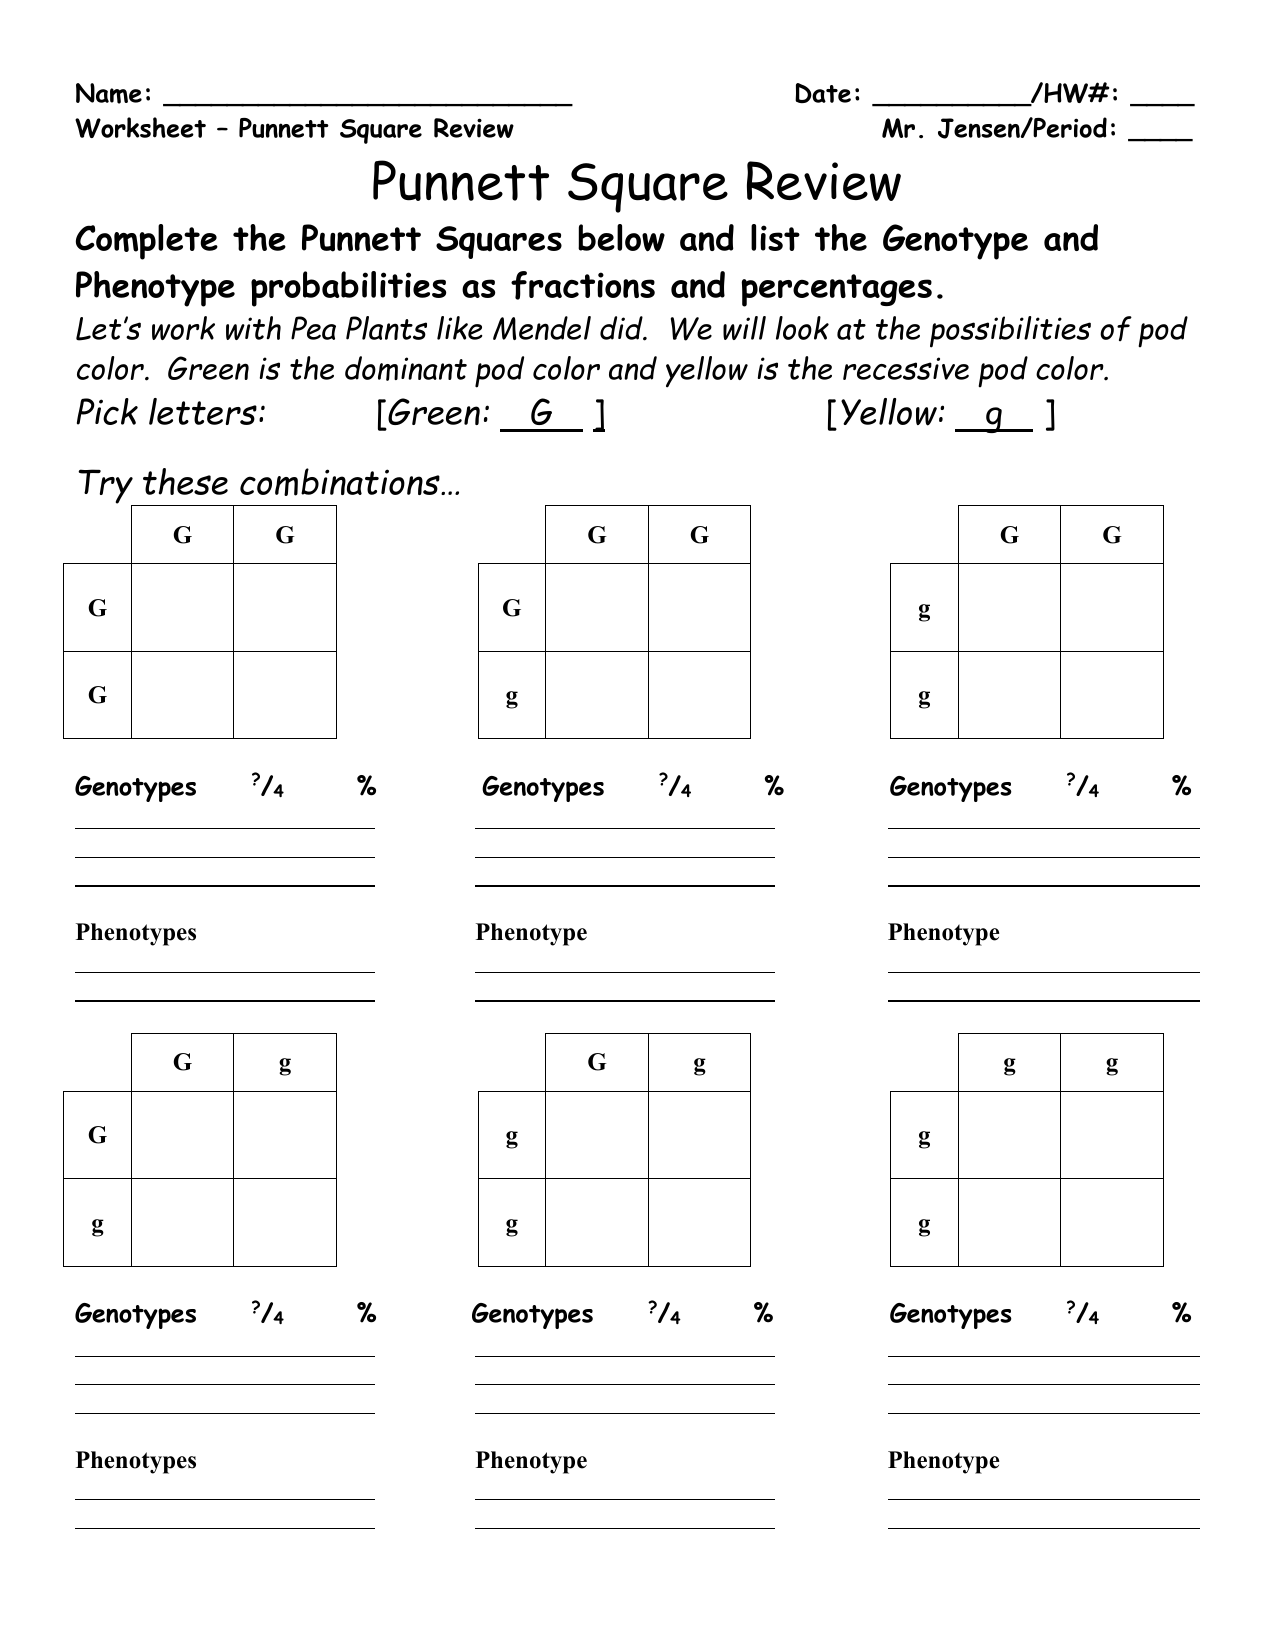 punnett-square-reading-worksheet